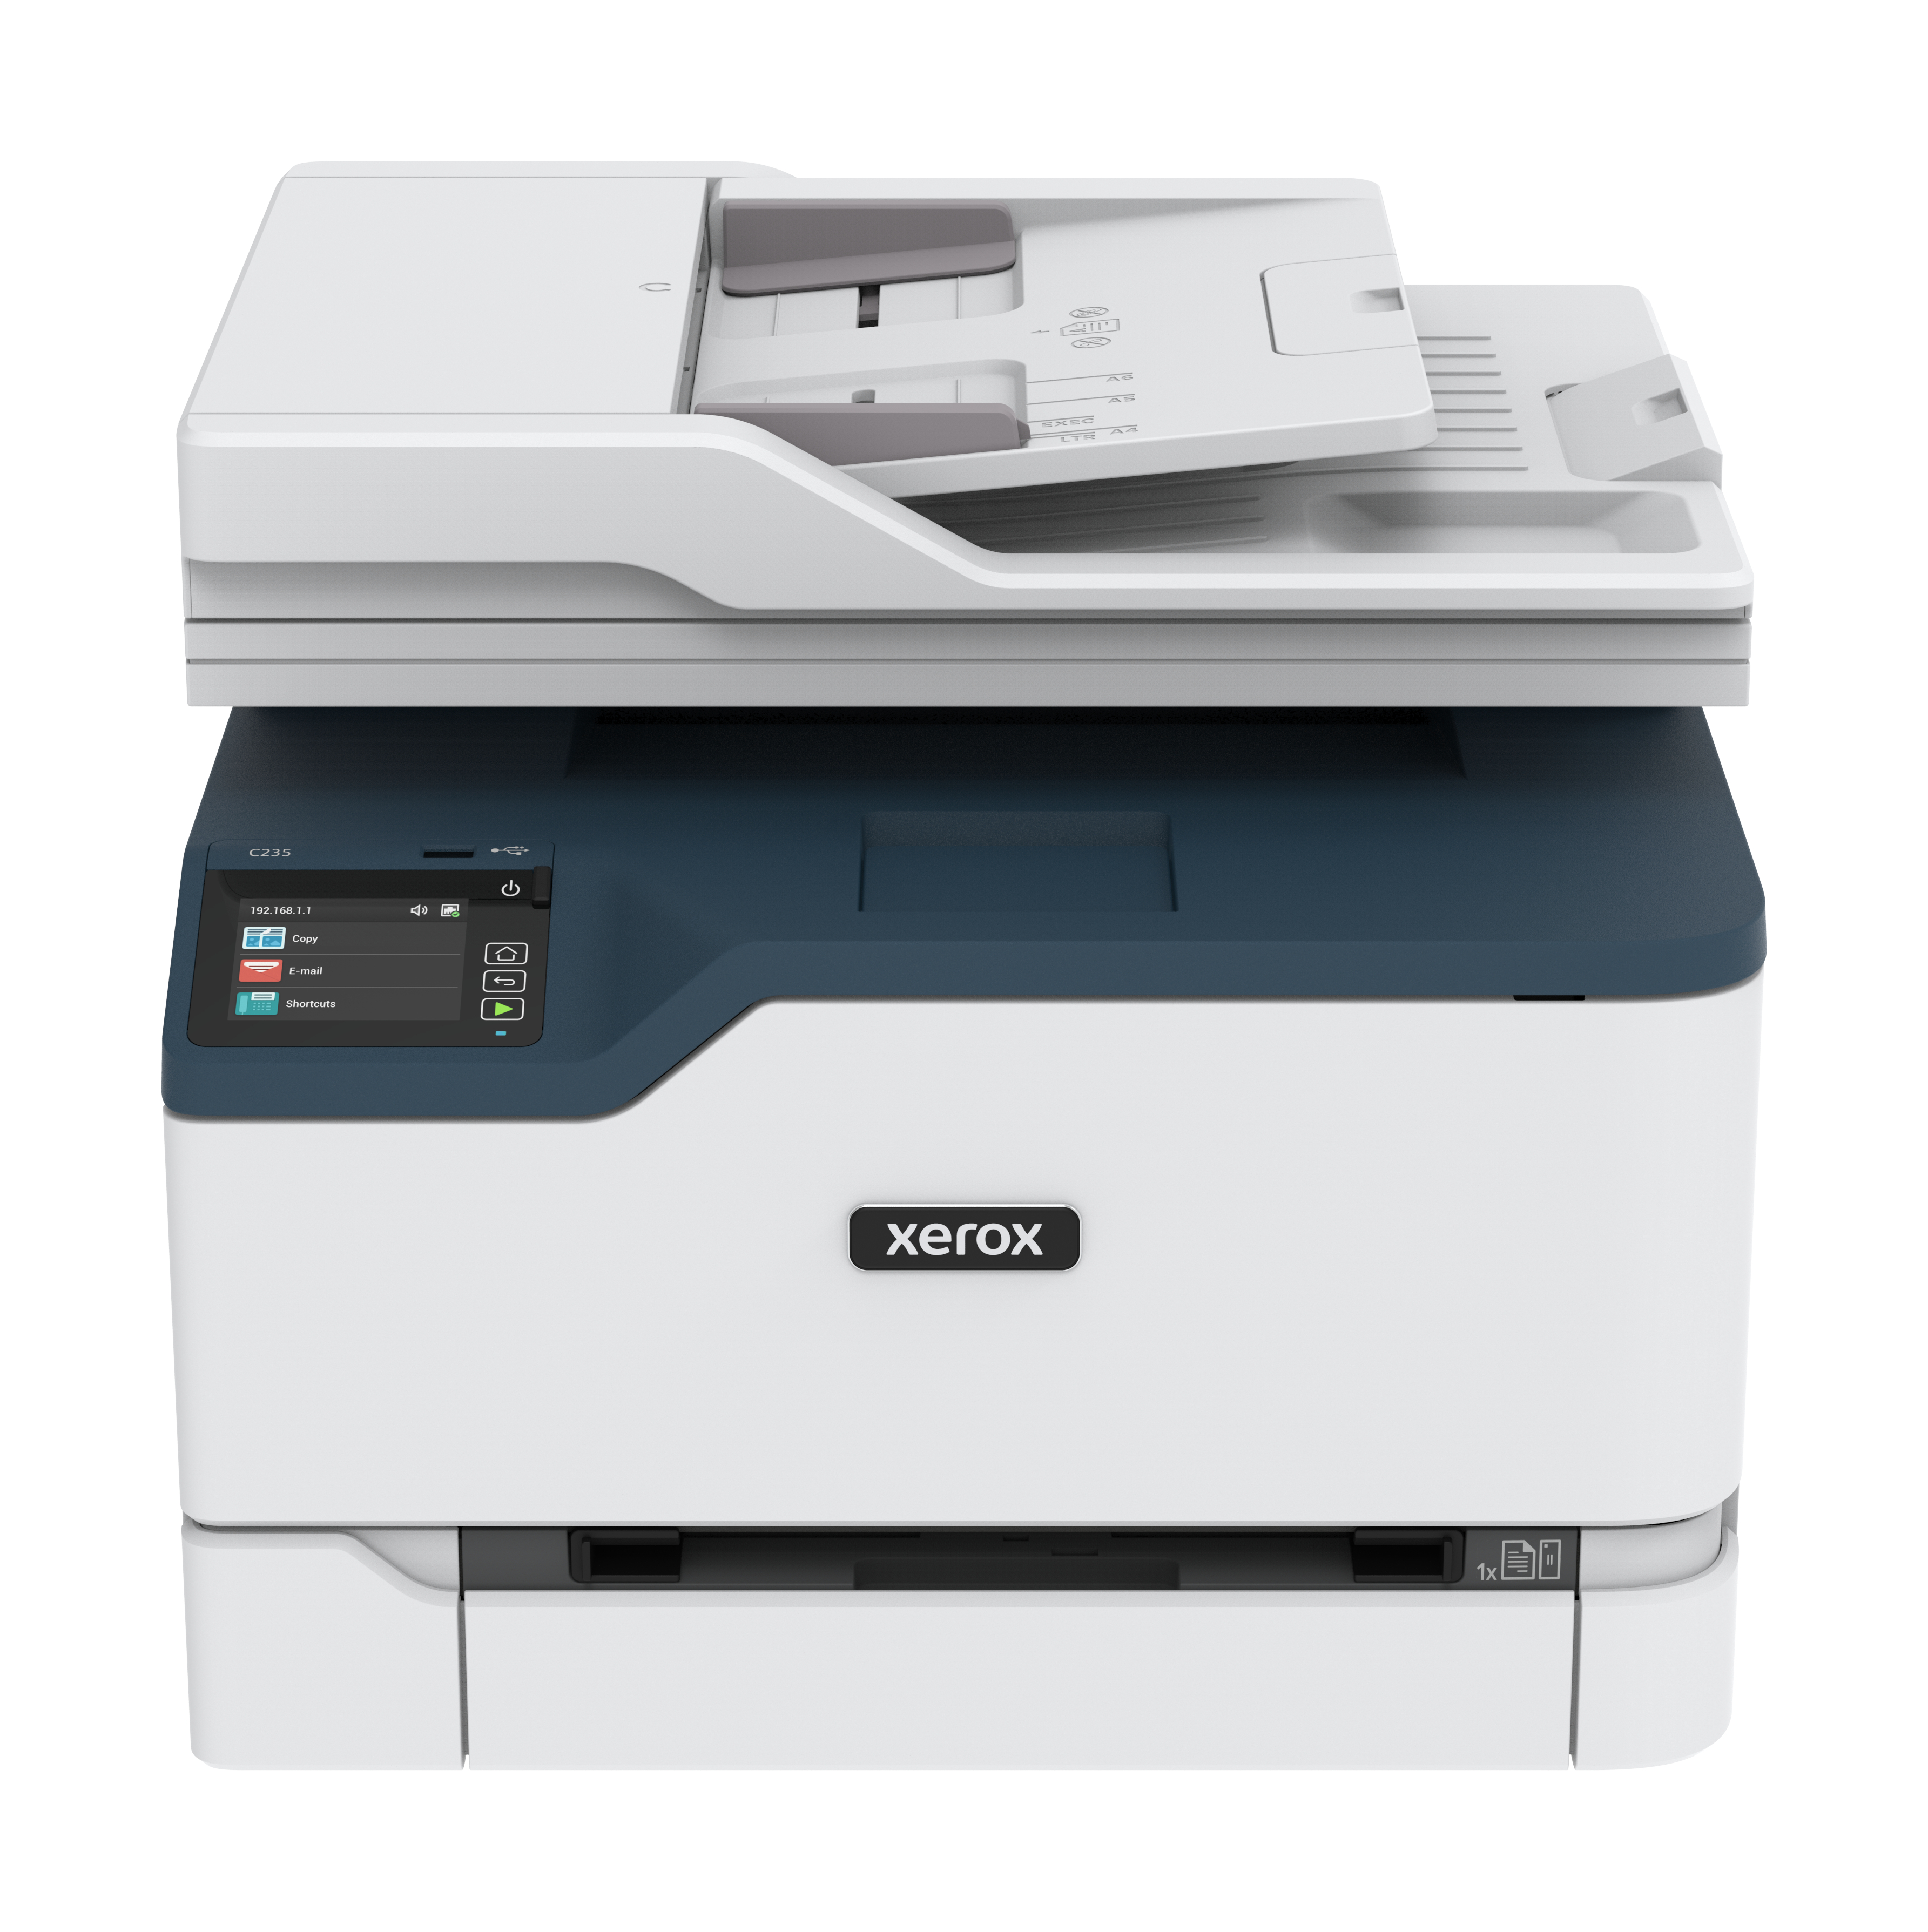 Impresora multifunción C235 a color - Xerox